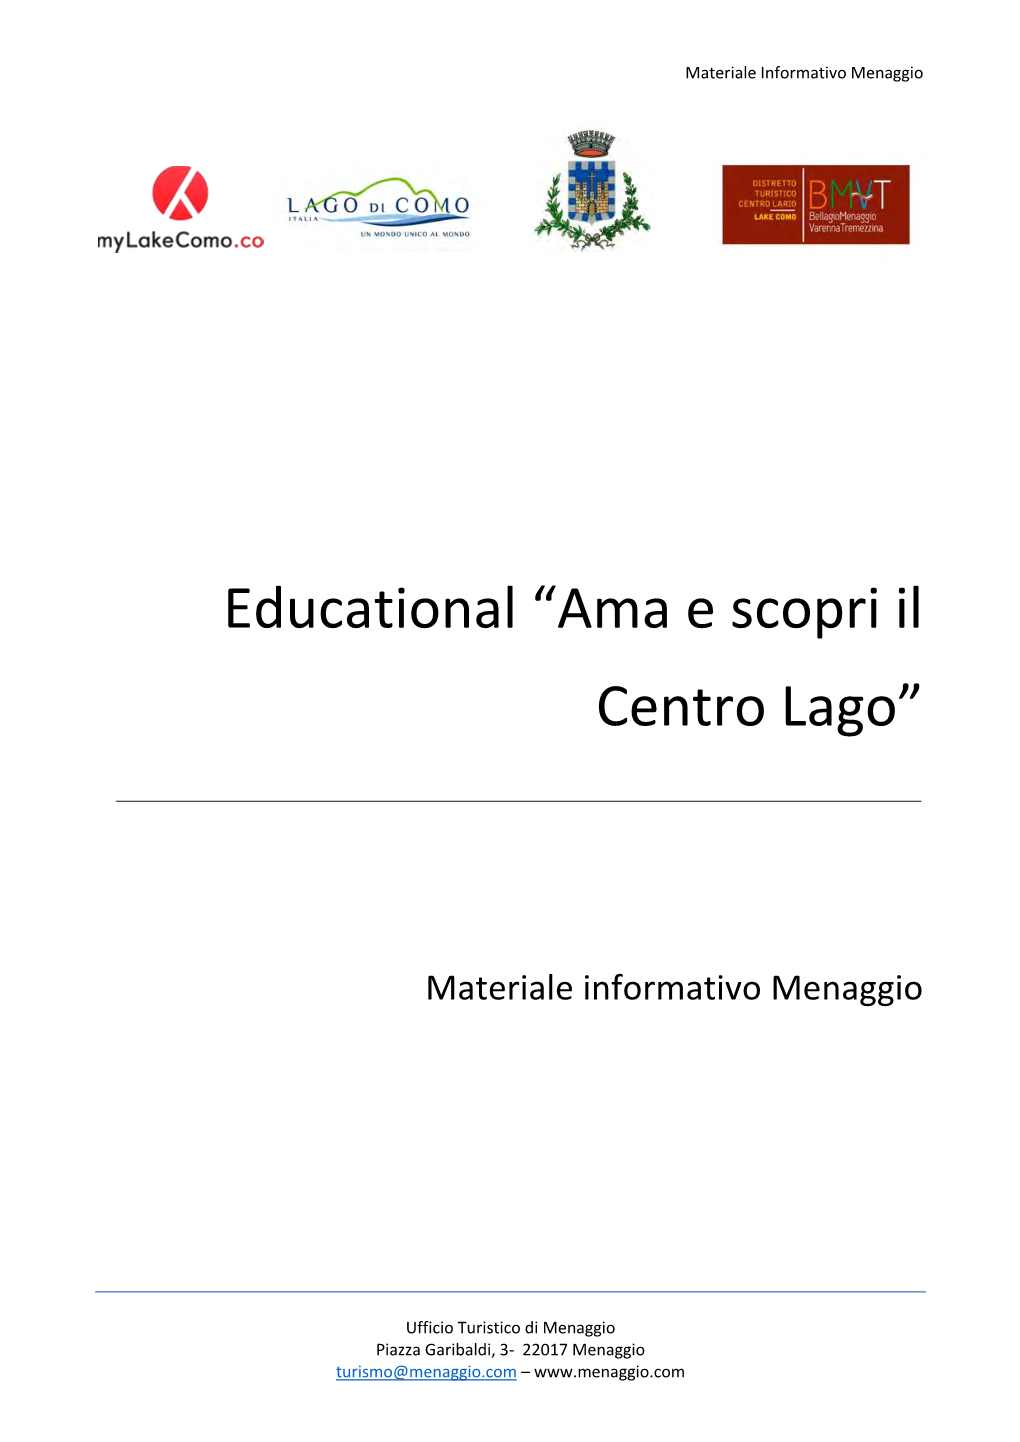 Educational “Ama E Scopri Il Centro Lago”